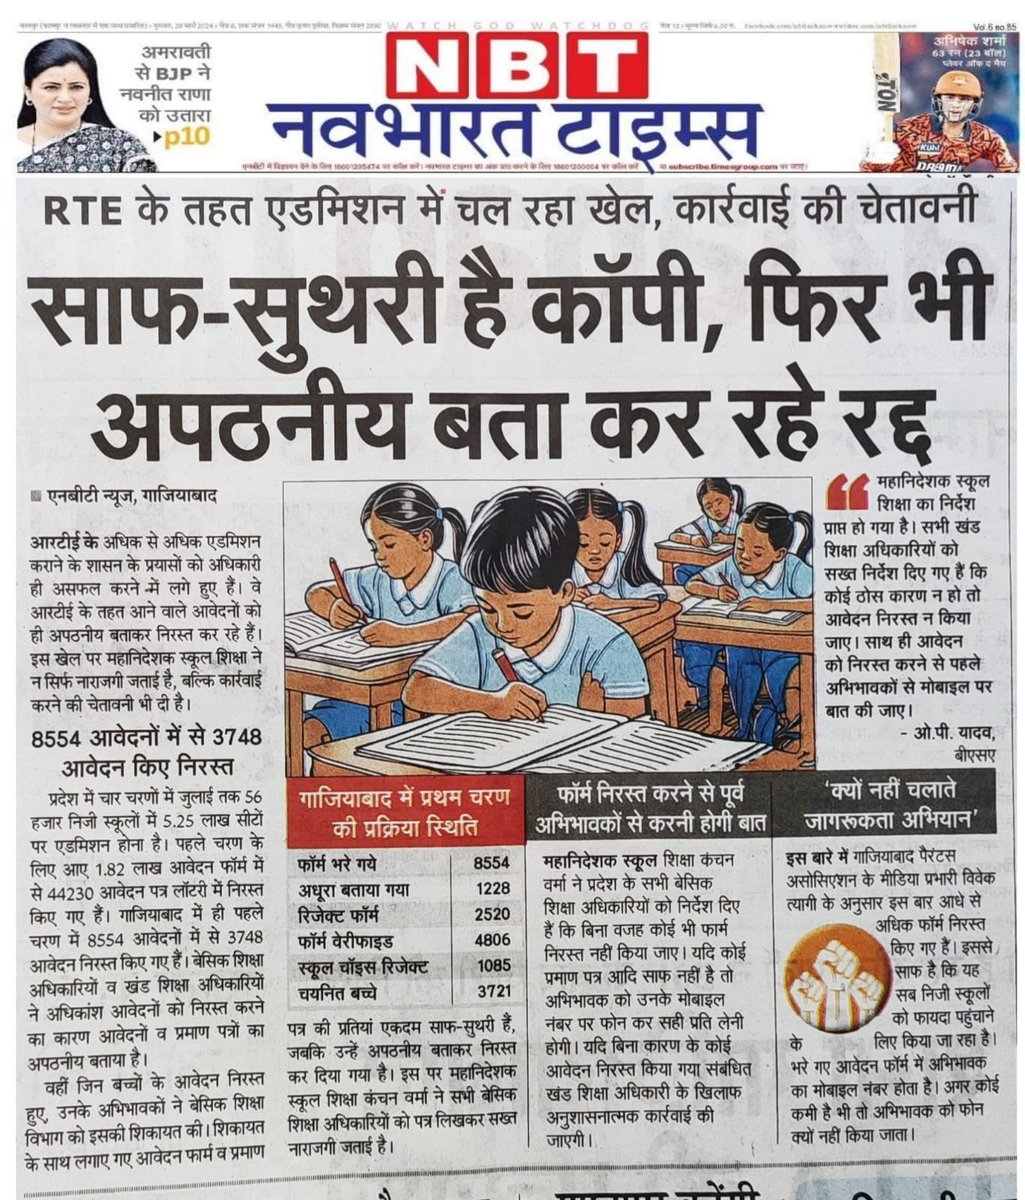 मा. @myogiadityanath जी जिले के बेसिक शिक्षा विभाग @BsaGhaziabad द्वारा प्रथम चरण की लिस्ट में 55% से ज्यादा RTE के गरीब बच्चों के फार्म कुछ न कुछ कमी निकालकर निरस्त कर दिए है और RTE के चयनित बच्चों की लिस्ट में बड़ा फर्जीवाड़ा कर अपकीं मेहनत पर पानी फेर रहे है @dm_ghaziabad